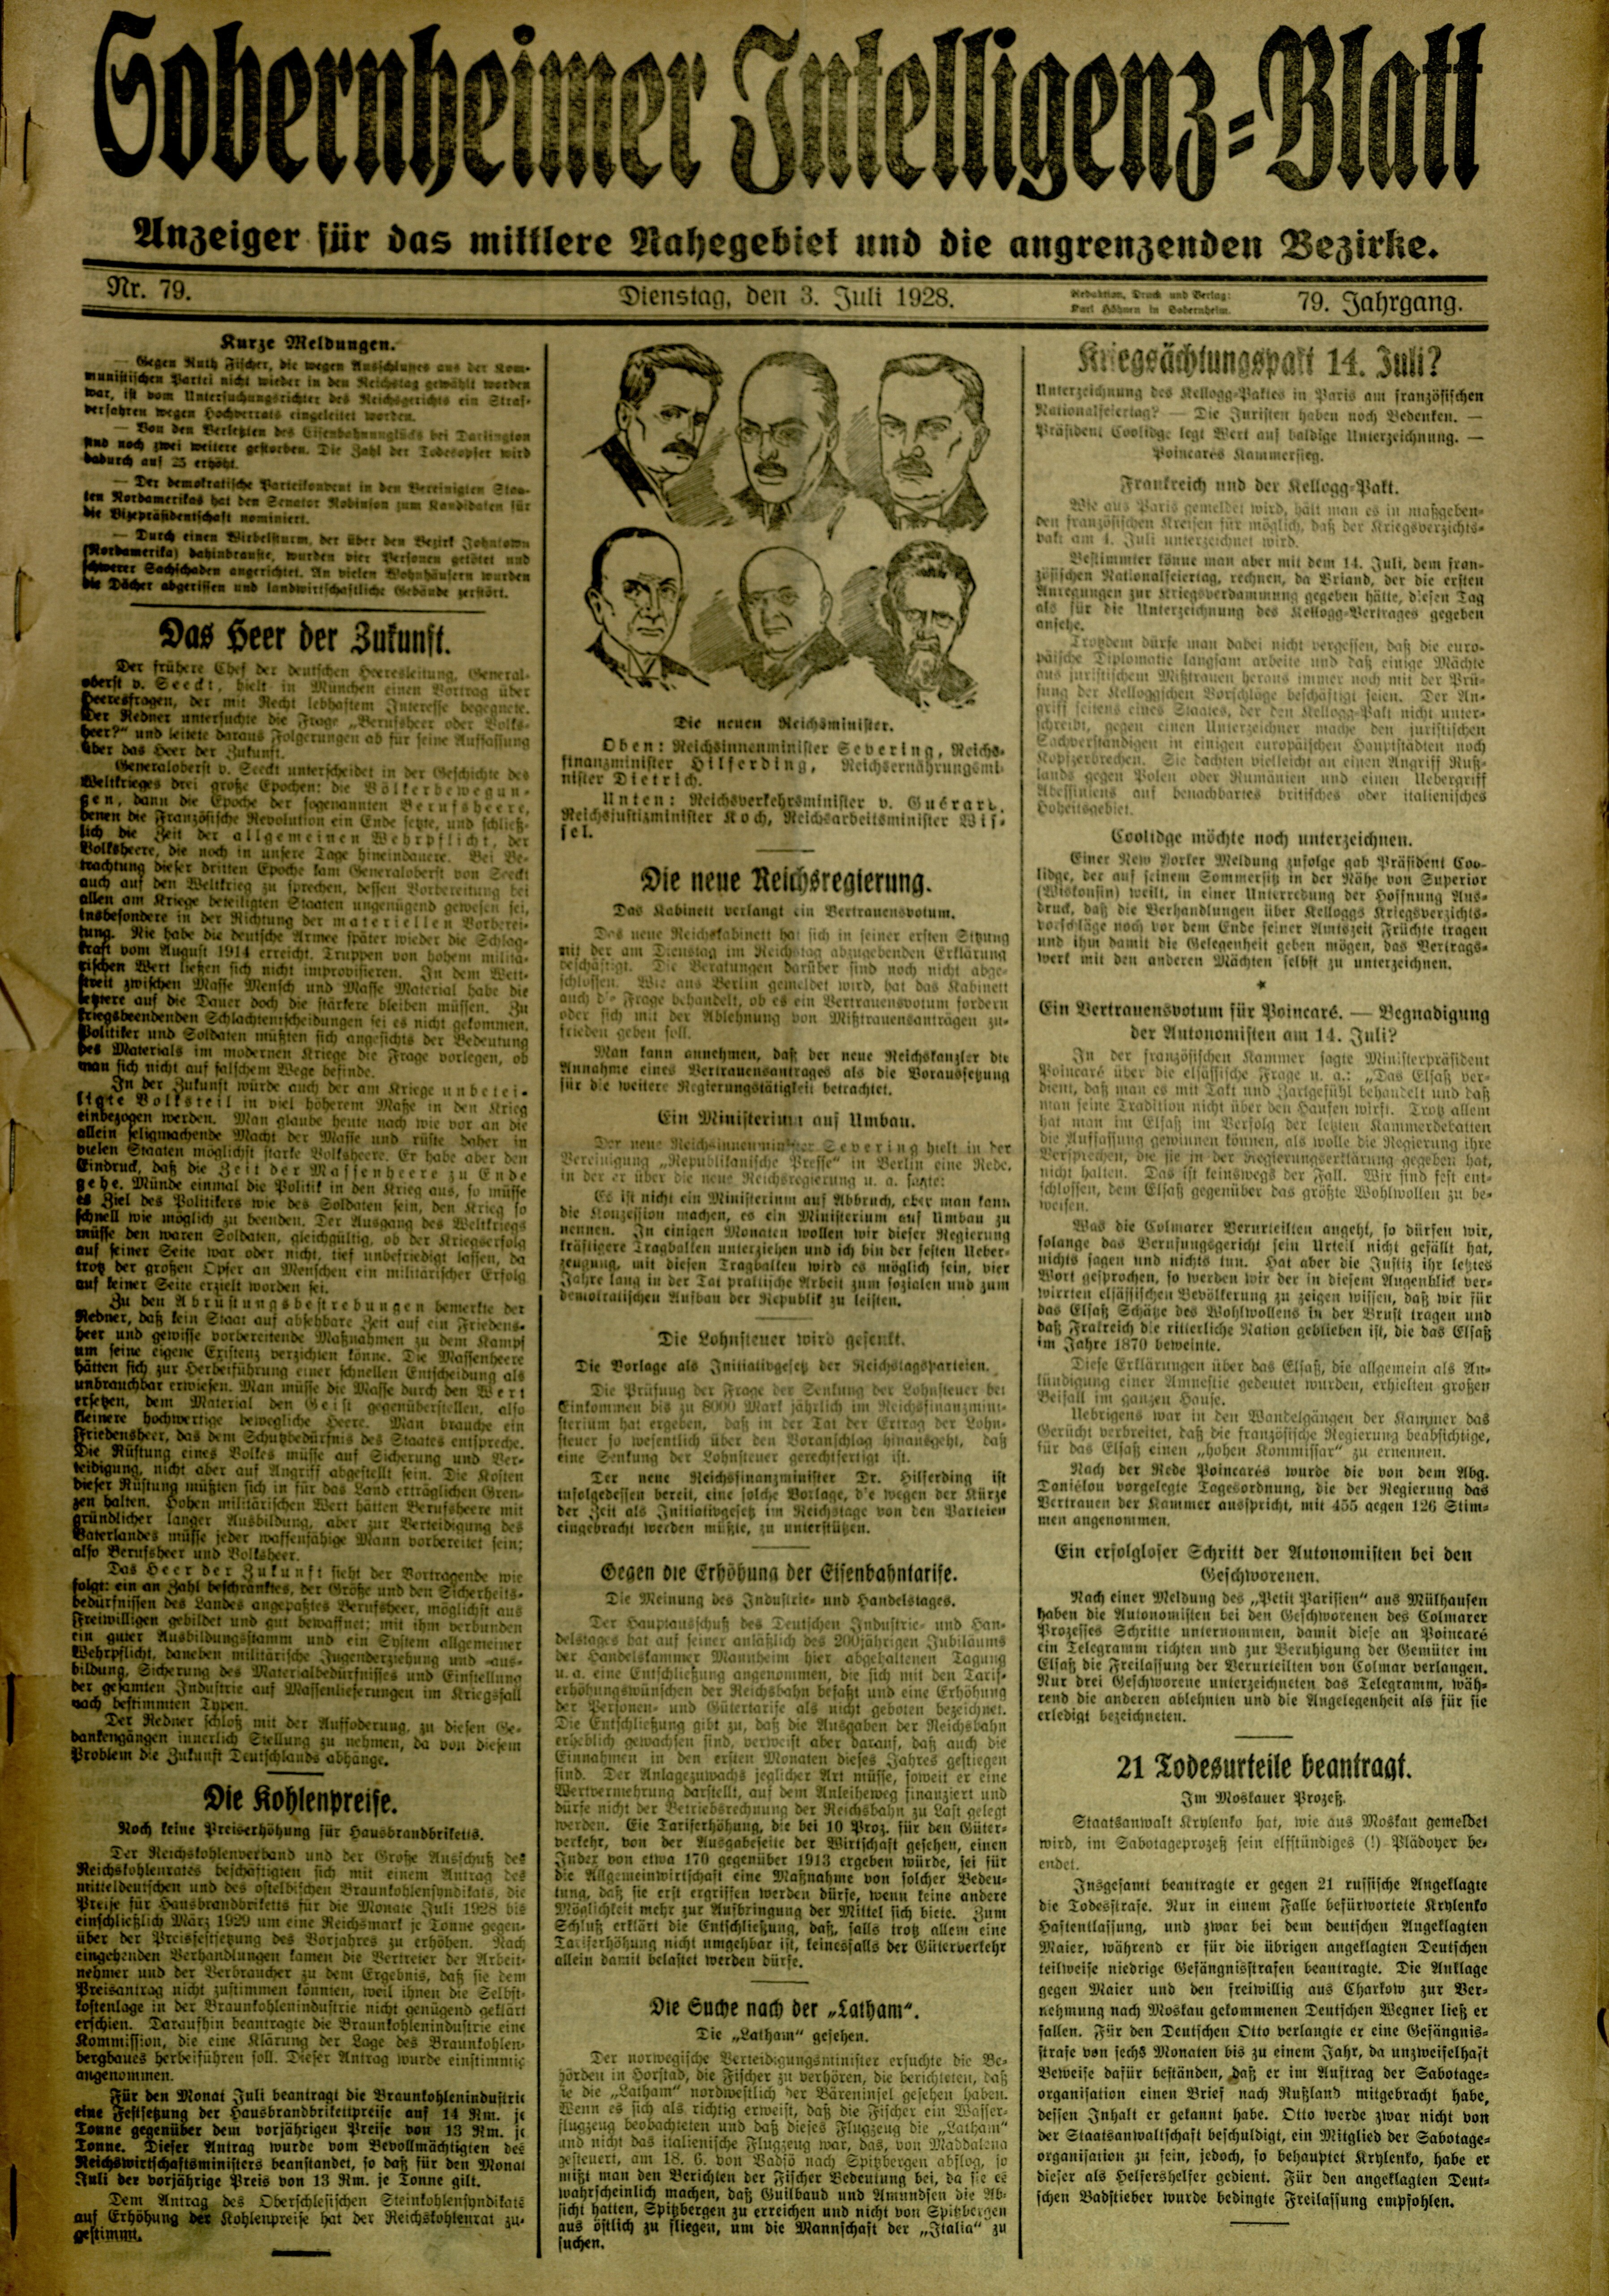 Zeitung: Sobernheimer Intelligenzblatt; Juli 1928, Jg. 79 Nr. 79 (Heimatmuseum Bad Sobernheim CC BY-NC-SA)